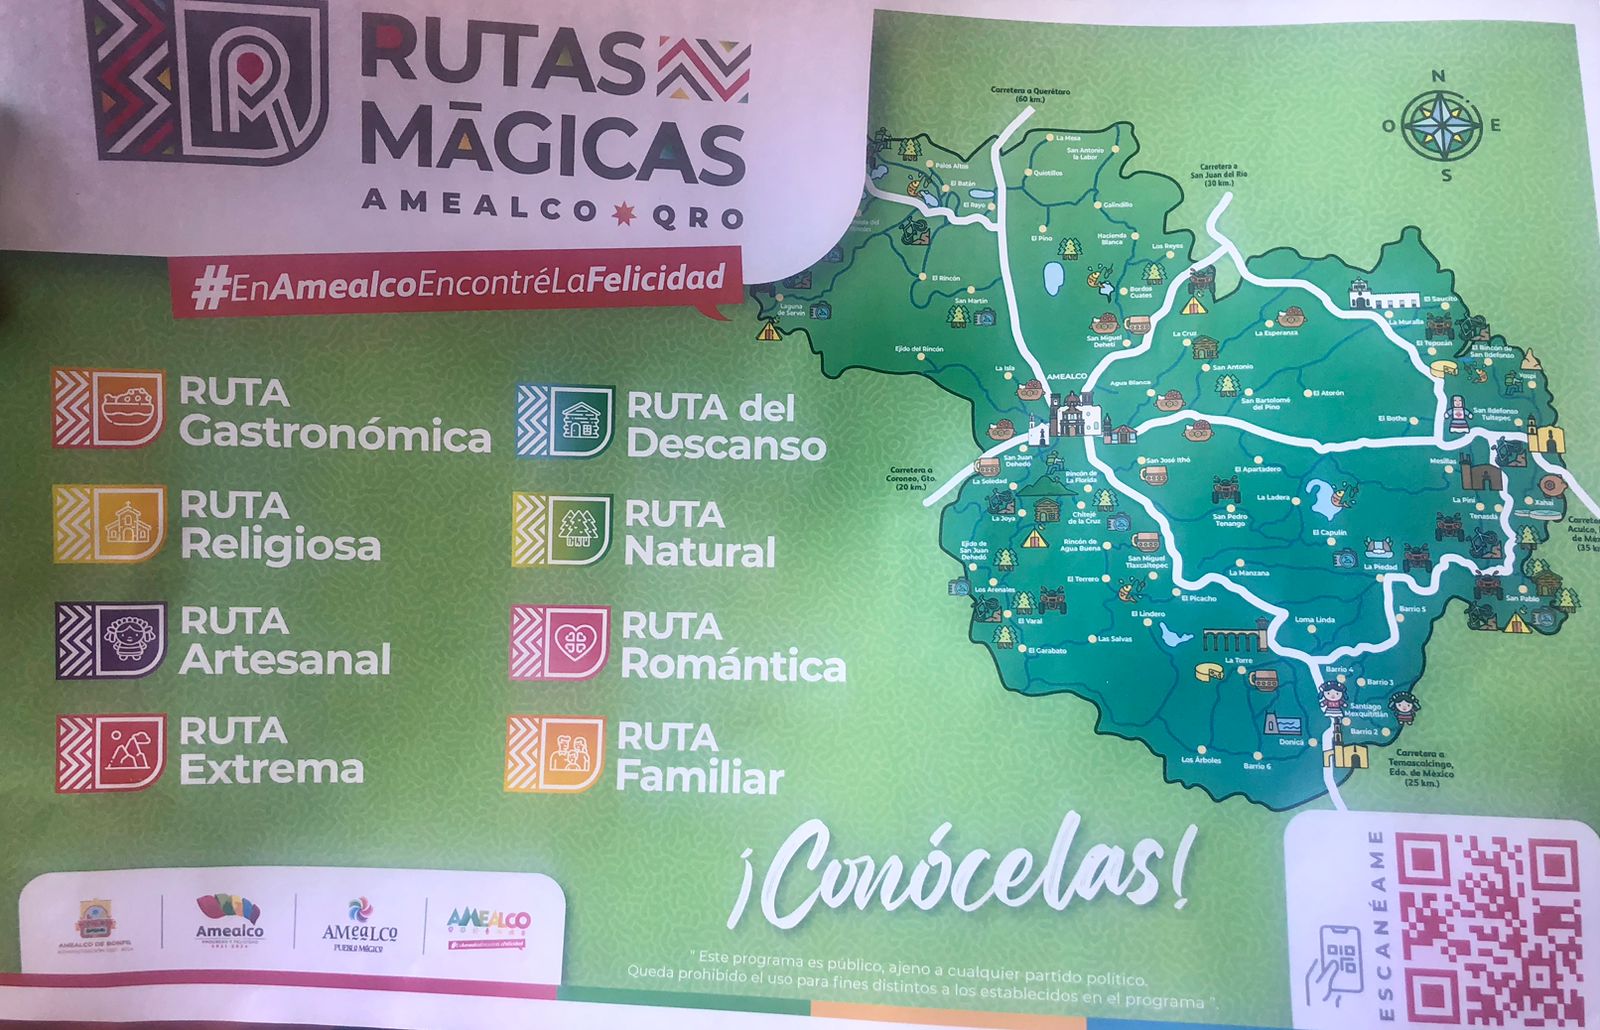 Amealco presenta Rutas Mágicas, una nueva alternativa turística en Querétaro